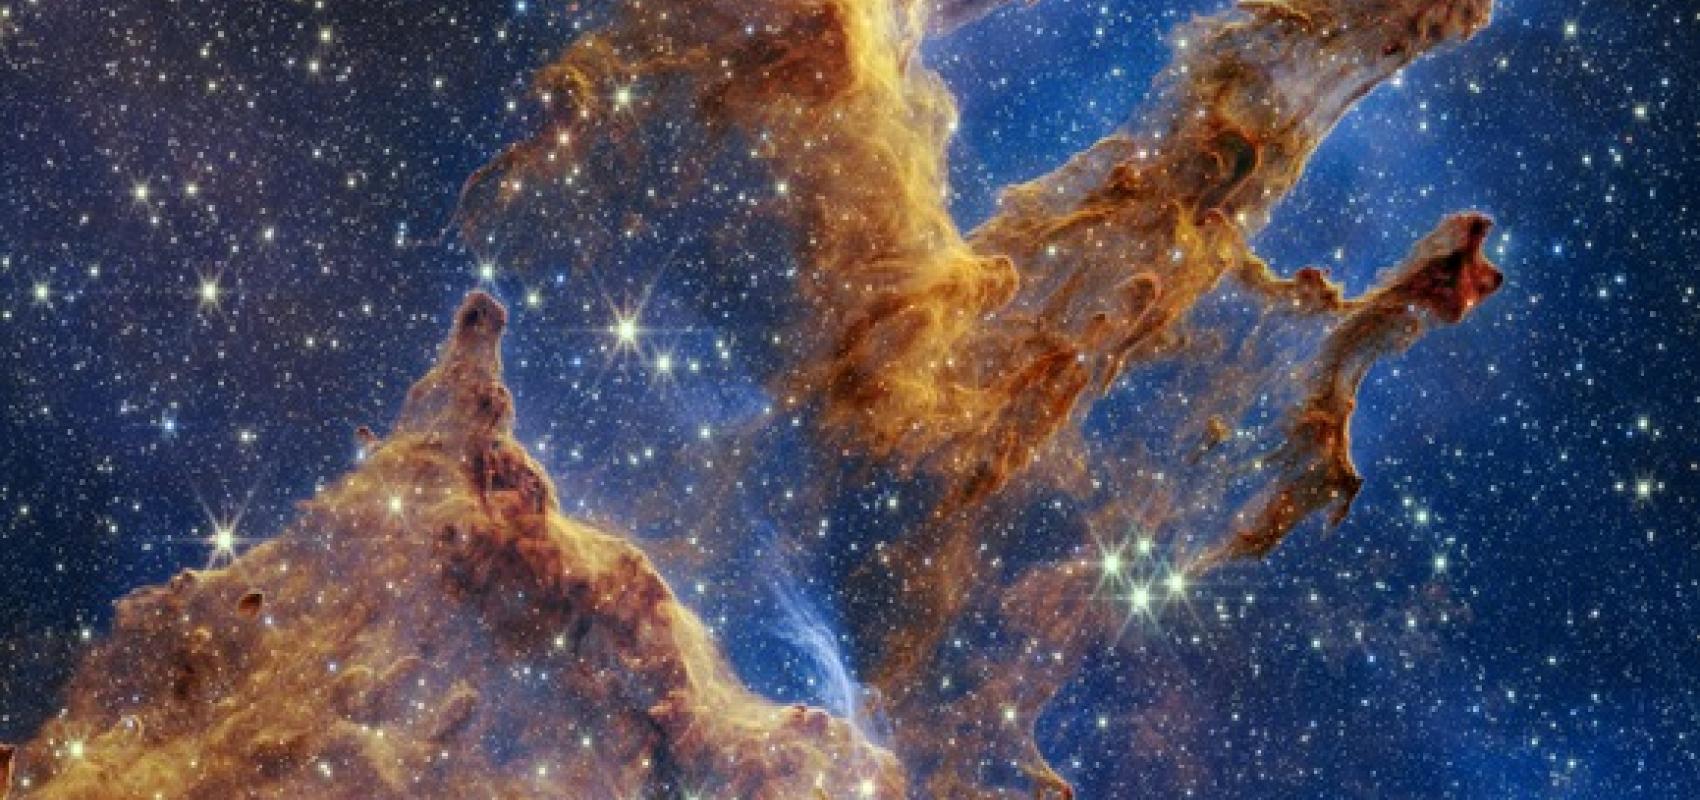 Les « piliers de la création », vue prise par le téléscope James-Webb -  - NASA and STScI (Space Telescope Science Institute)